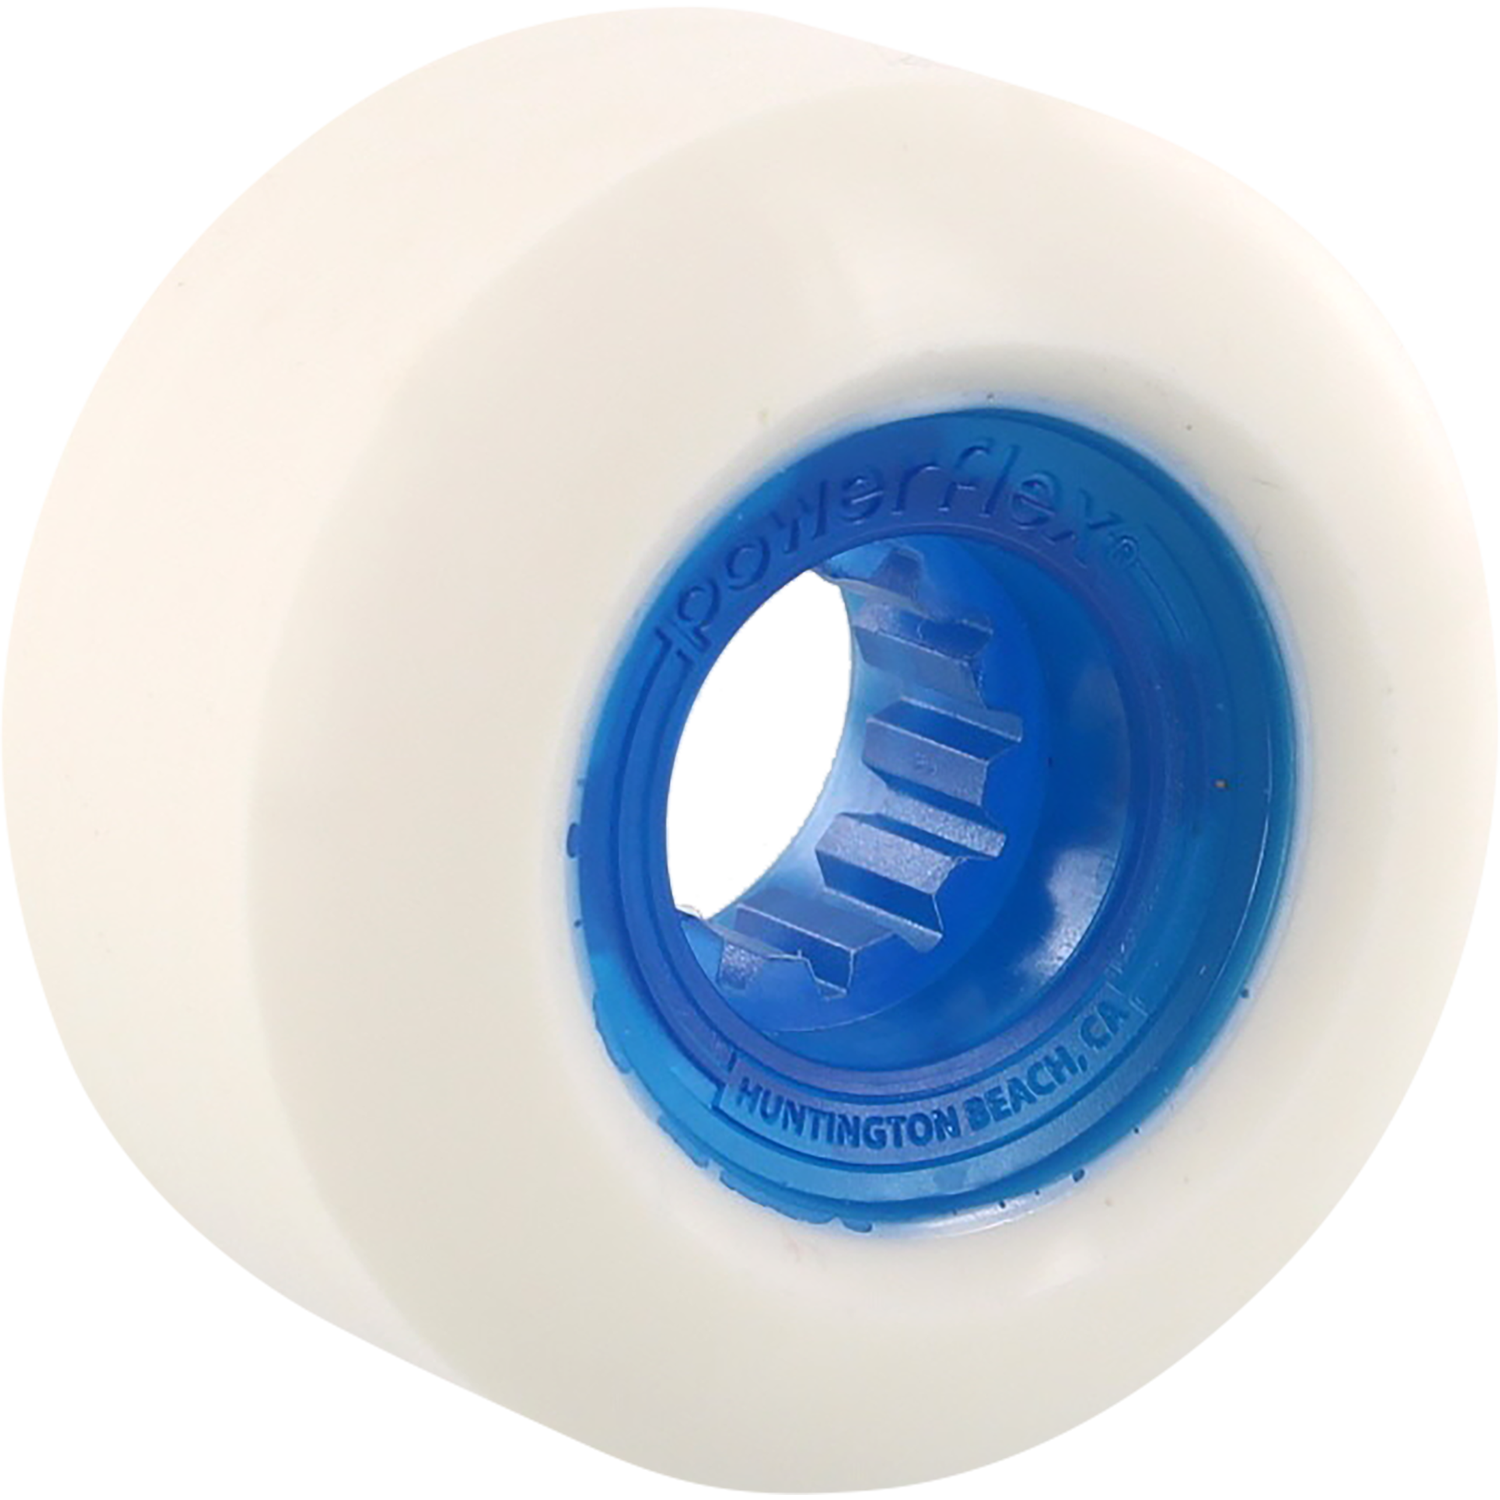 Powerflex Rock Candy 58mm 84b White/Cl.Blue Skateboard Wheels (Set of 4)